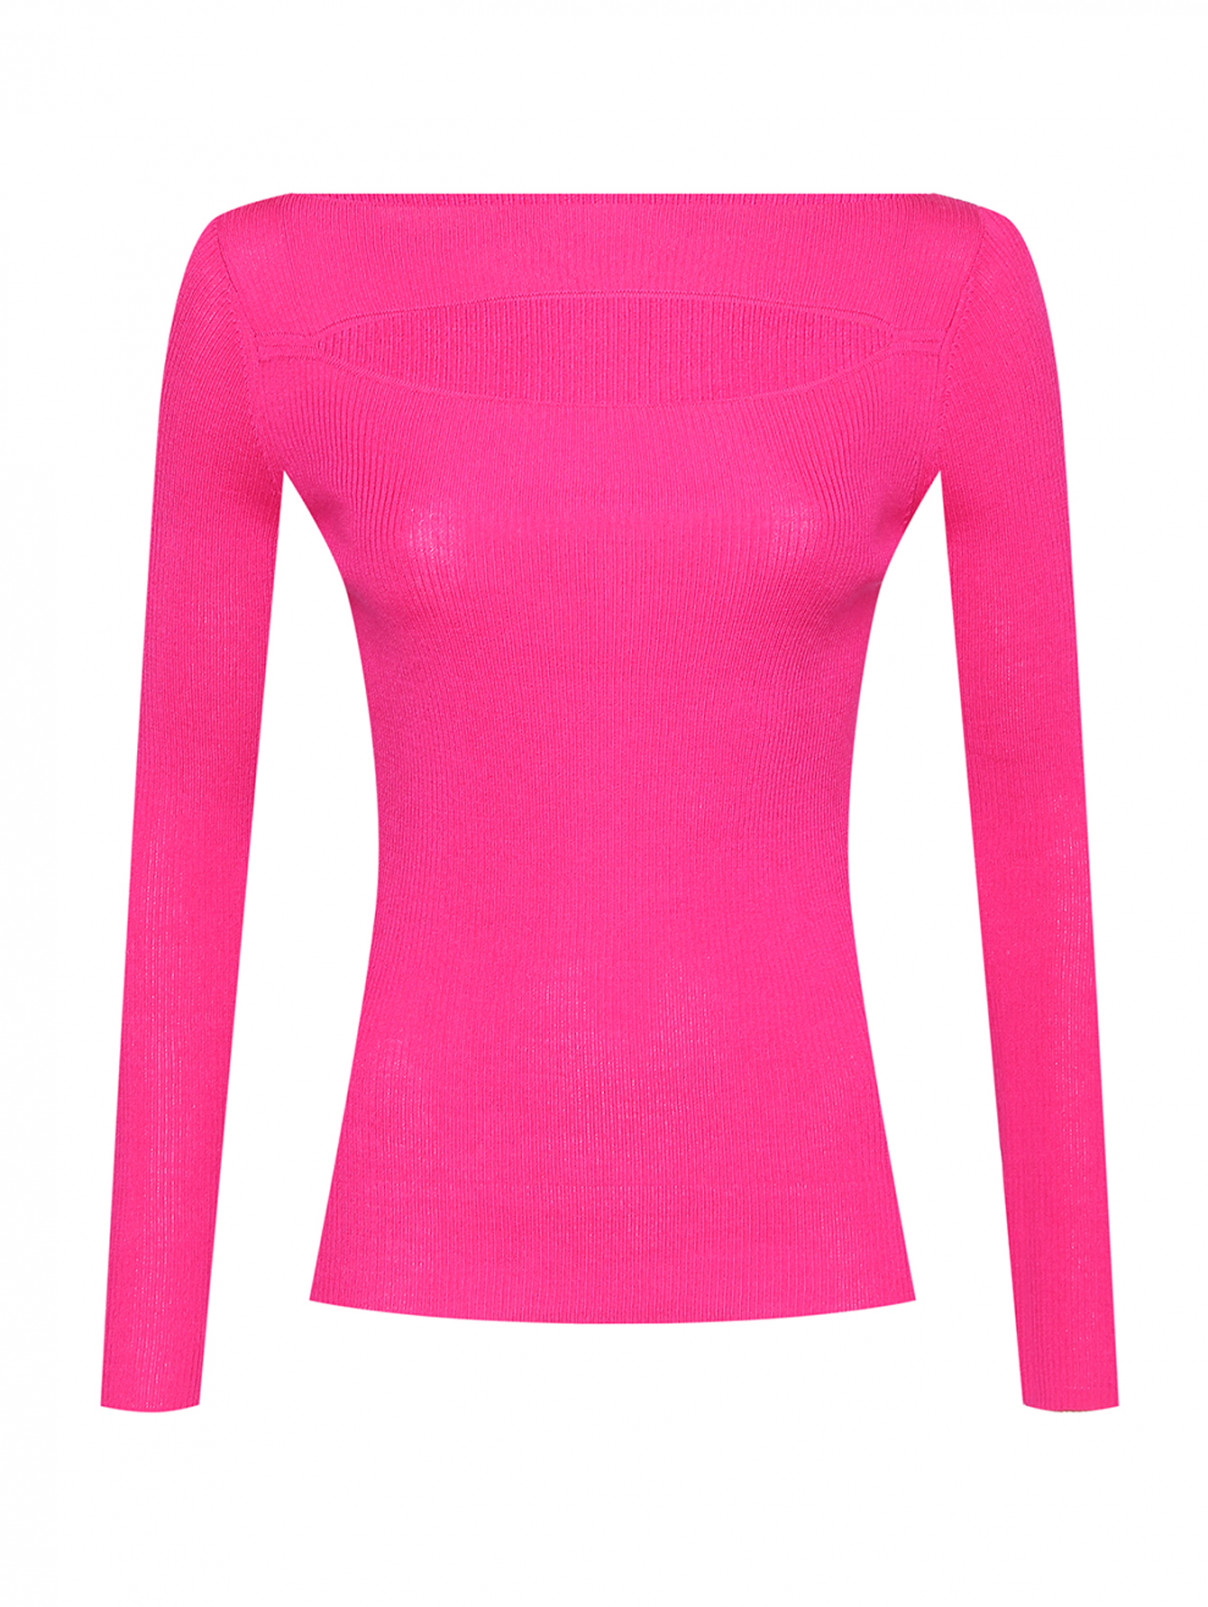 Джемпер из шерсти с вырезом P.A.R.O.S.H.  –  Общий вид  – Цвет:  Розовый